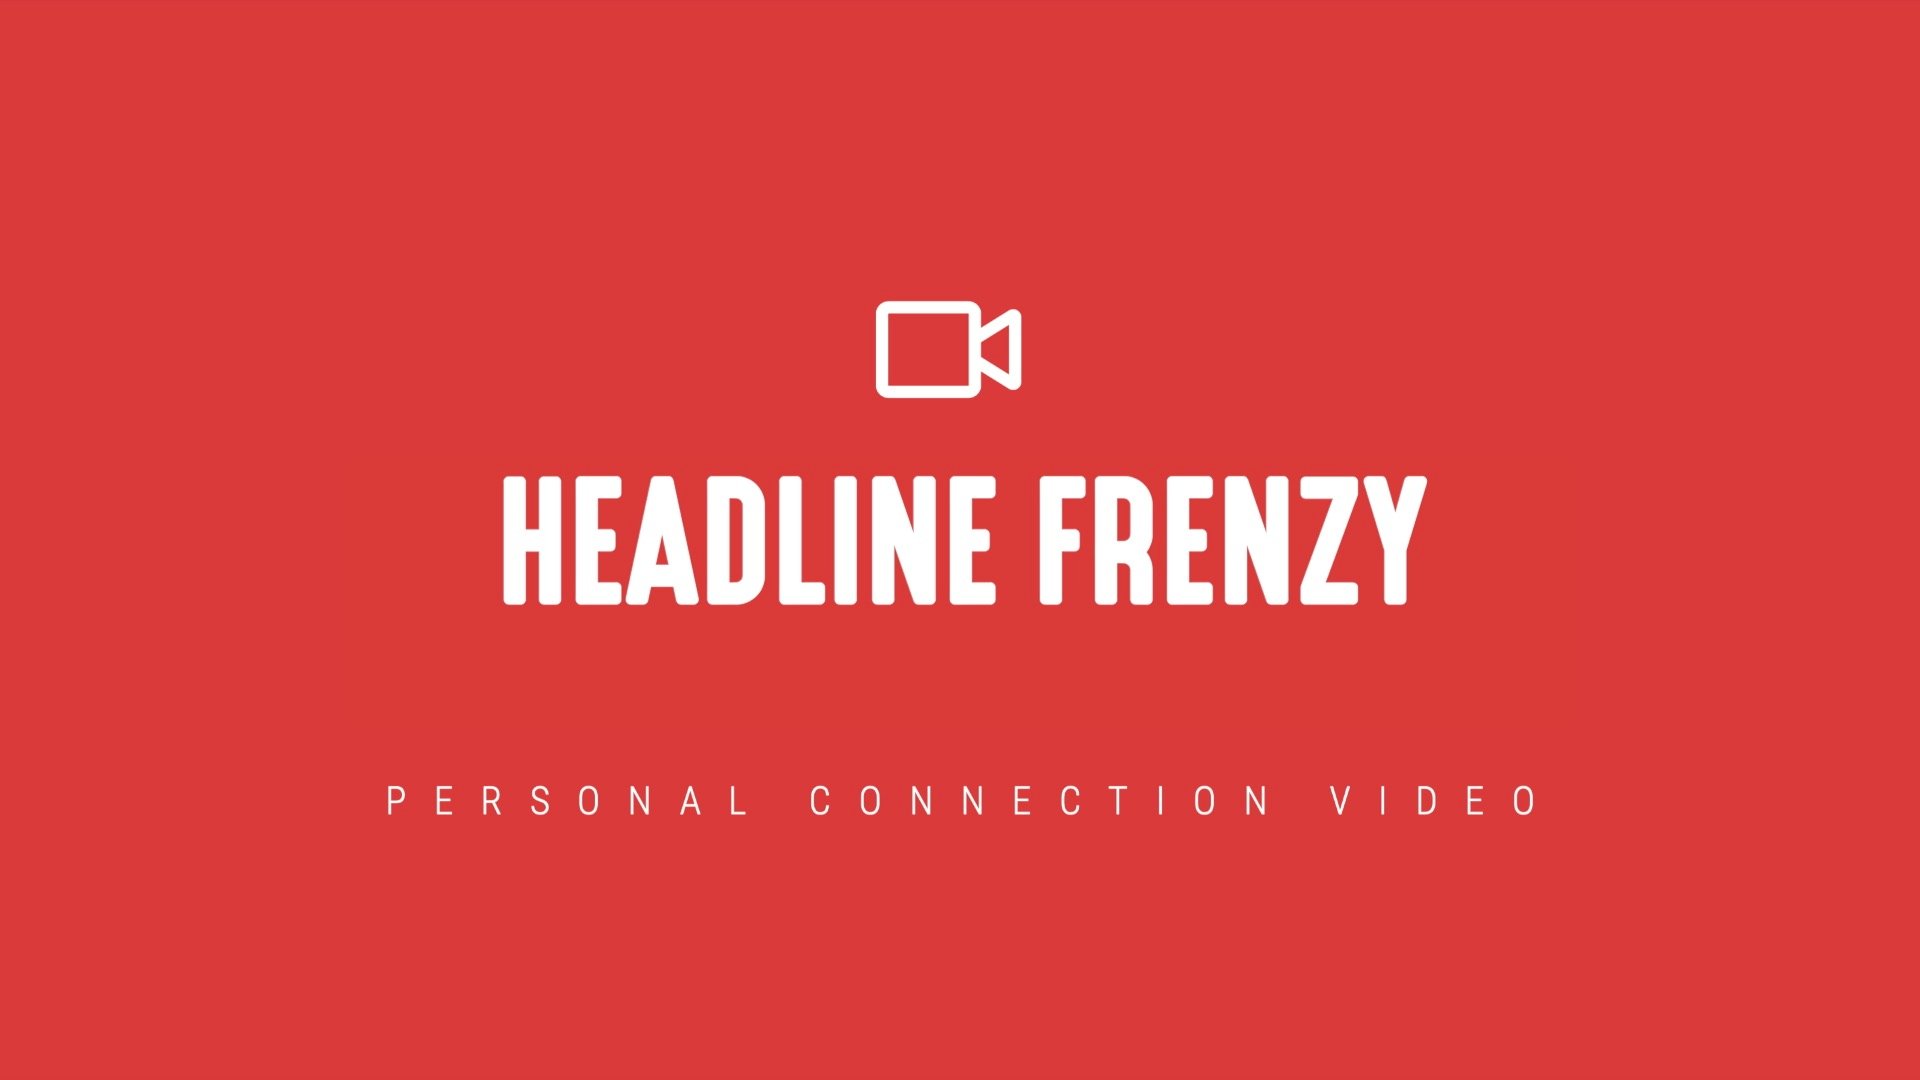 Headline-Frenzy-PCV